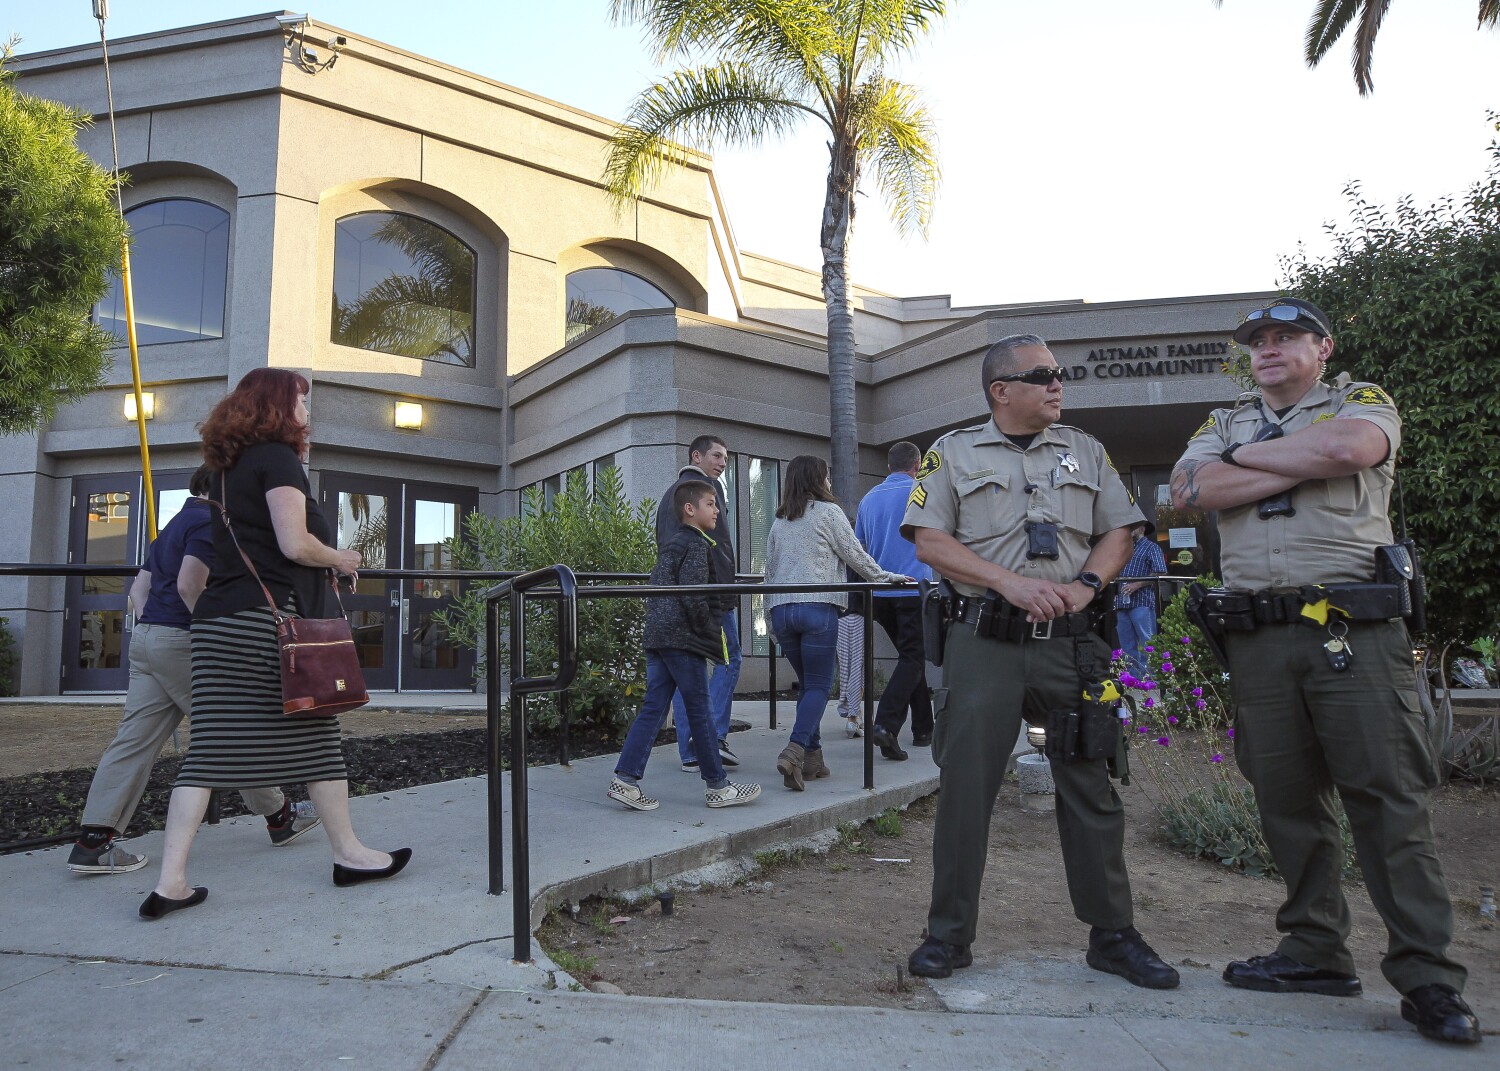 Victims of Poway synagogue shooting can sue gun maker, judge rules